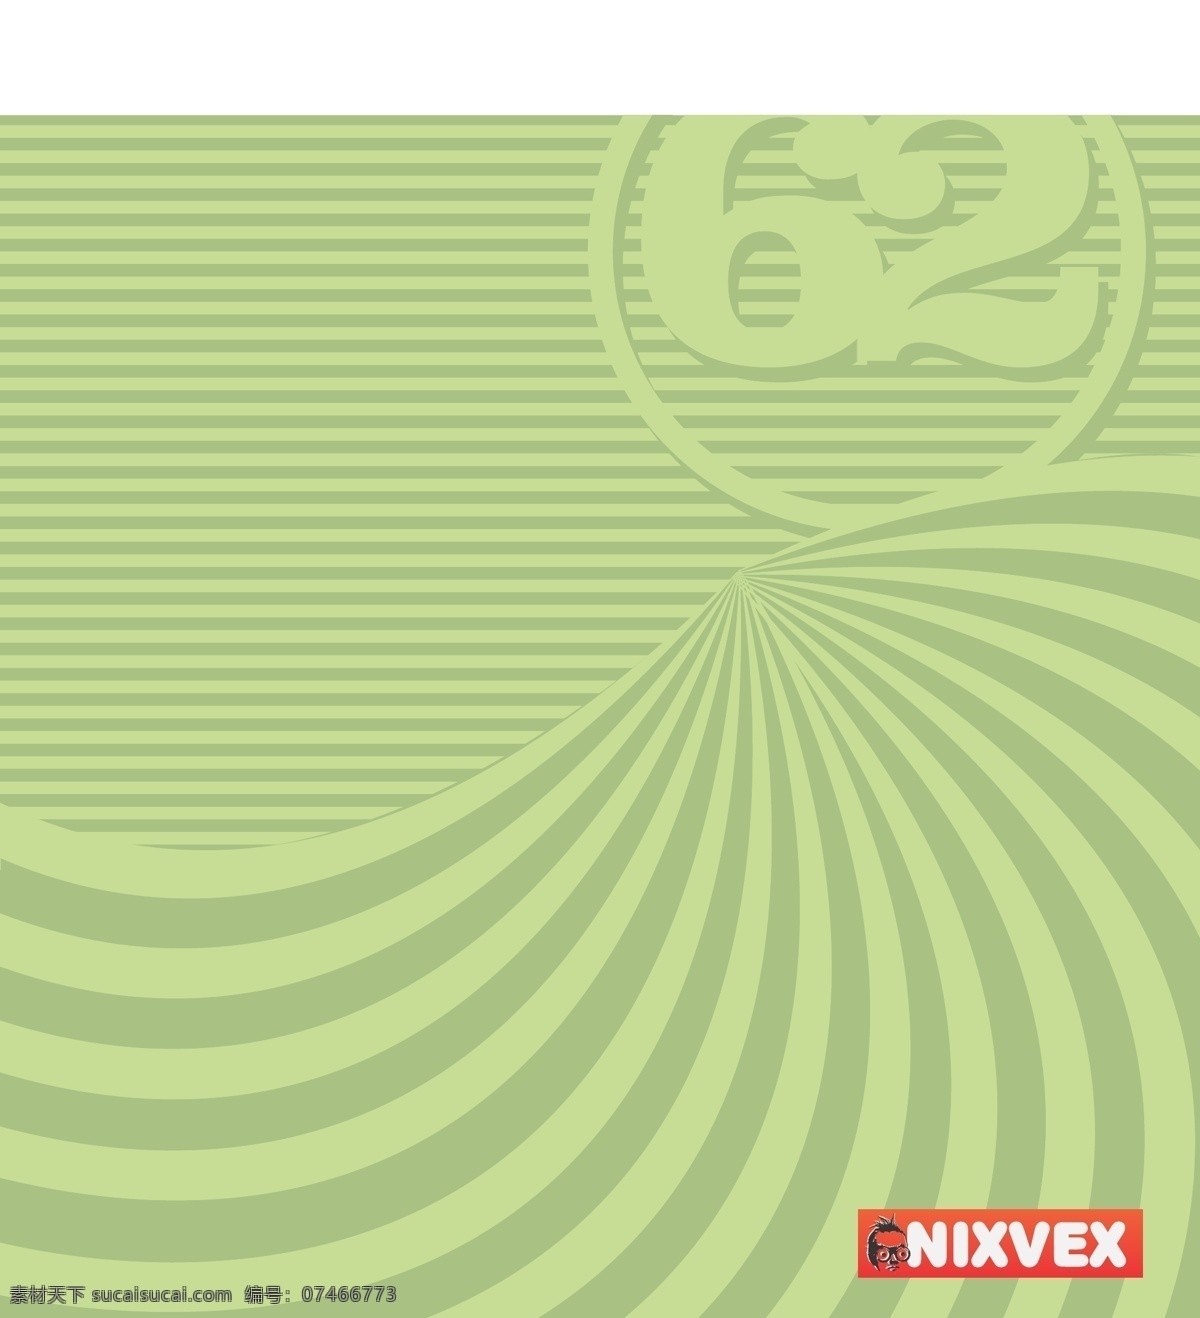 绿岛 欧普 艺术 背景 nixvex 自由 矢量 背景壁纸 设计元素 艺术载体 模板和模型